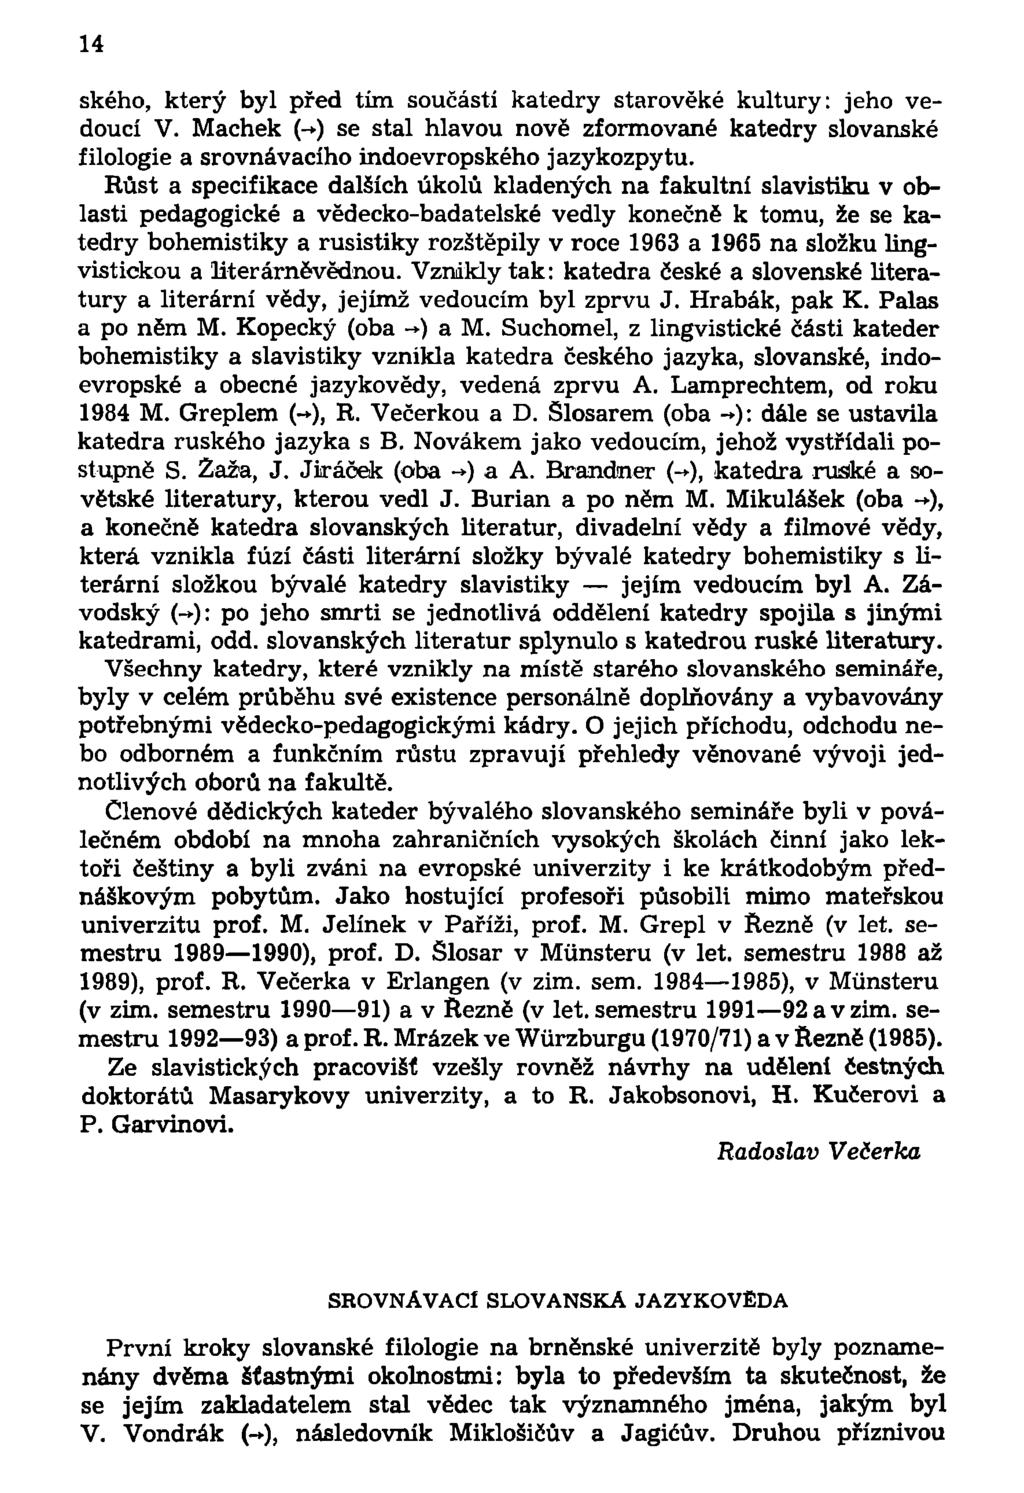 14 ského, který byl před tím součástí katedry starověké kultury: jeho vedoucí V. Machek (- ) se stal hlavou nově zformované katedry slovanské filologie a srovnávacího indoevropského jazykozpytu.